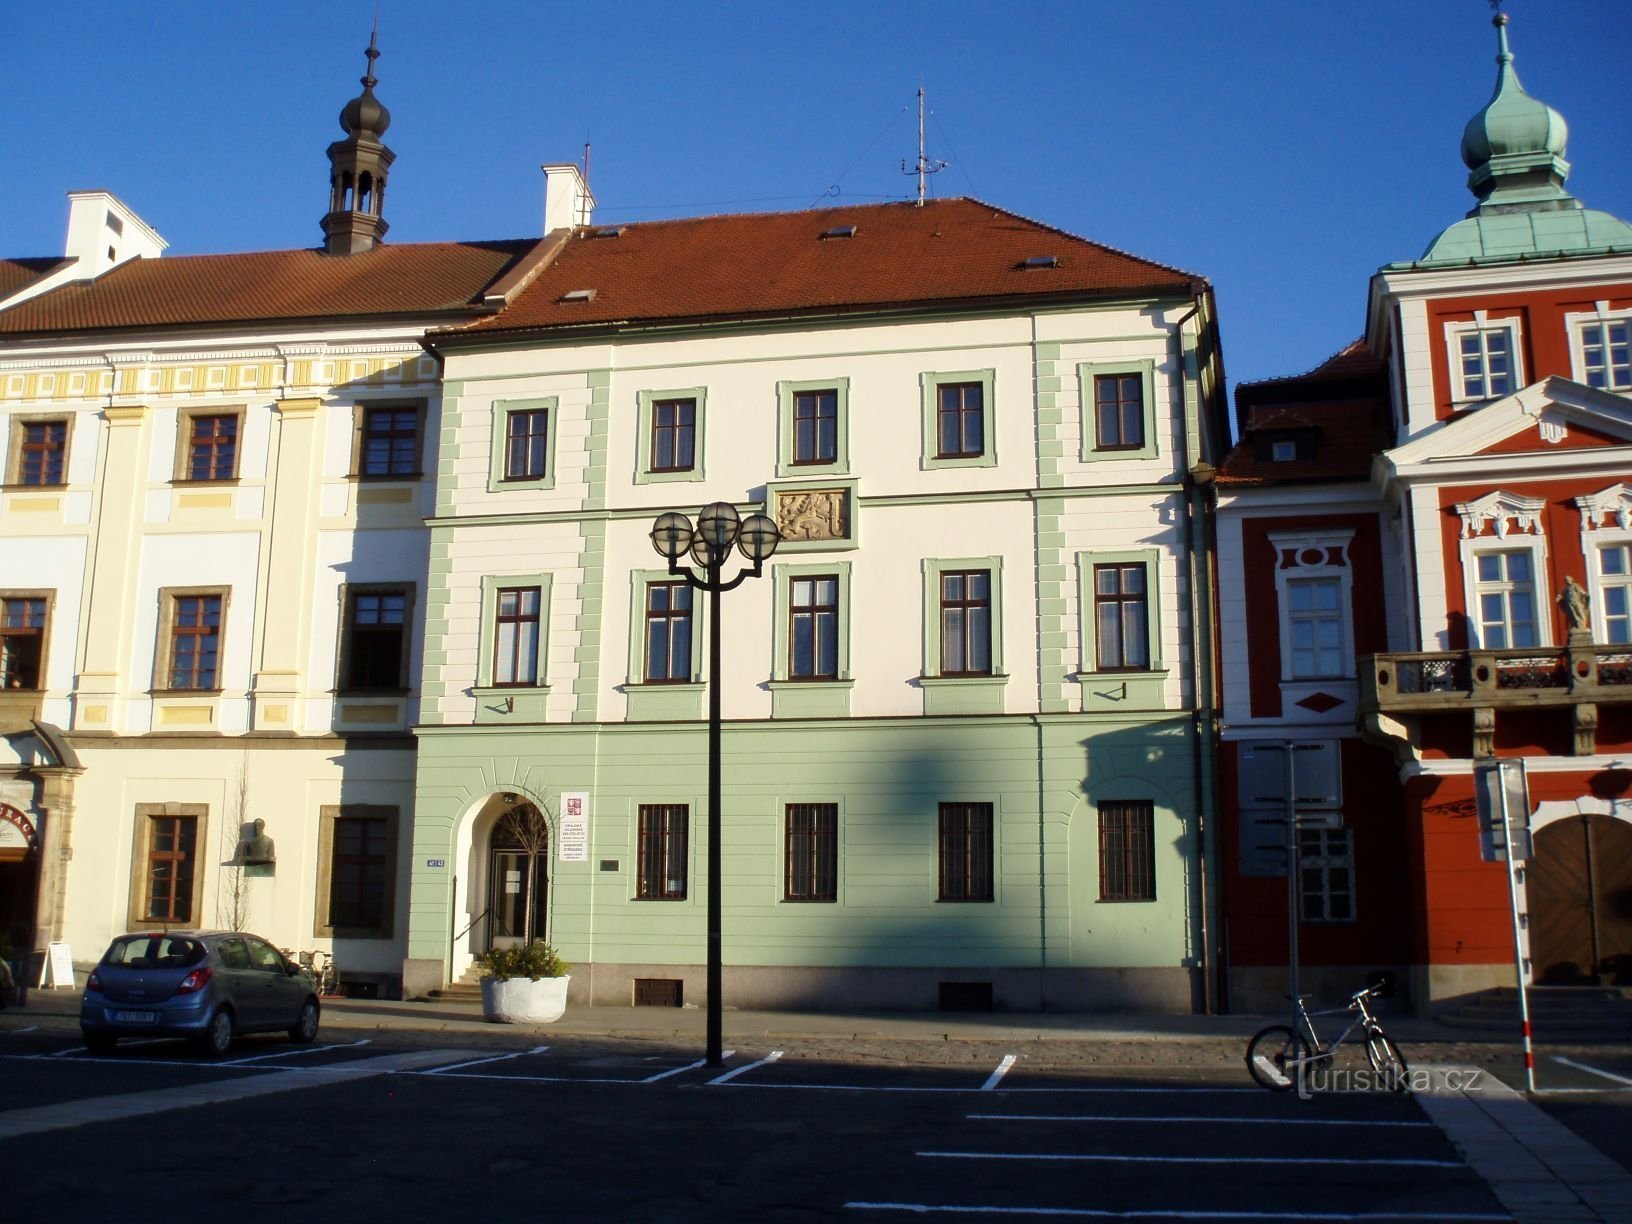 Velké náměstí nr. 33 (Hradec Králové, 25.4.2012. oktober XNUMX)